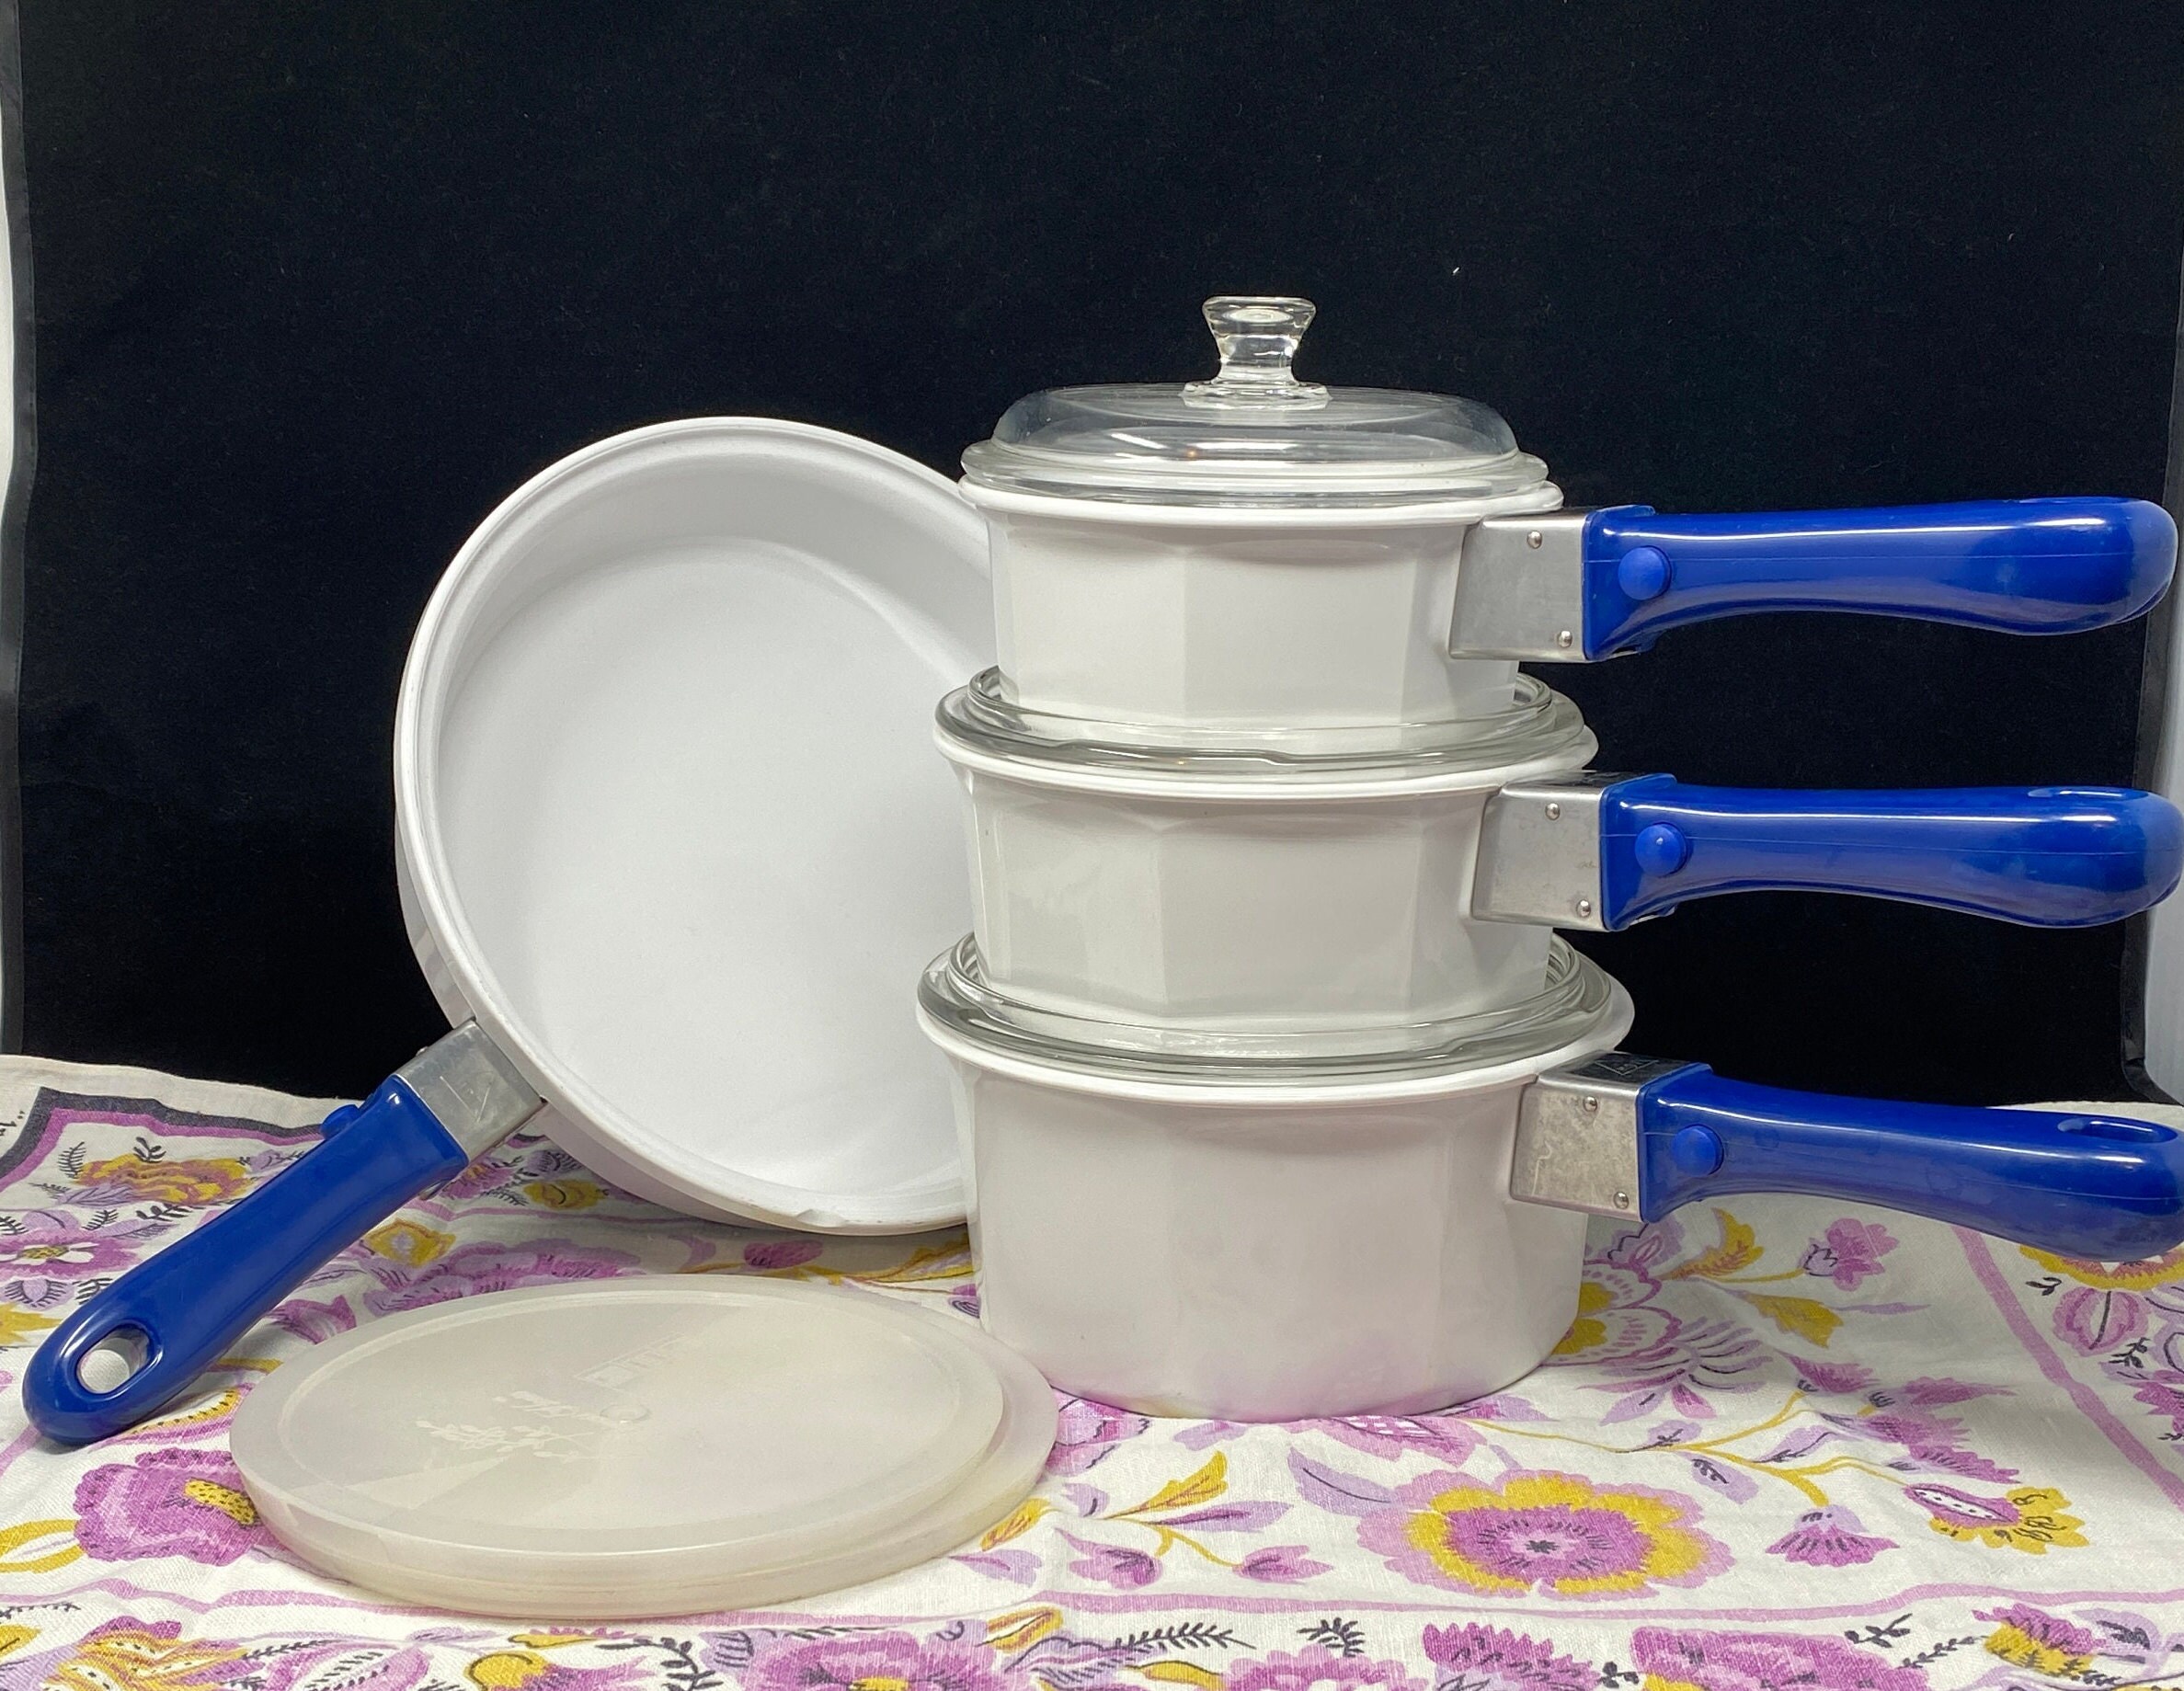 Princess House Noveau Cookware Set Pieces - Large Skillet, 2 Qt Saucepan,  1.5 Qt Saucepan, 1 Qt Saucepan, Blue Handles, Glass & Plastic Lids